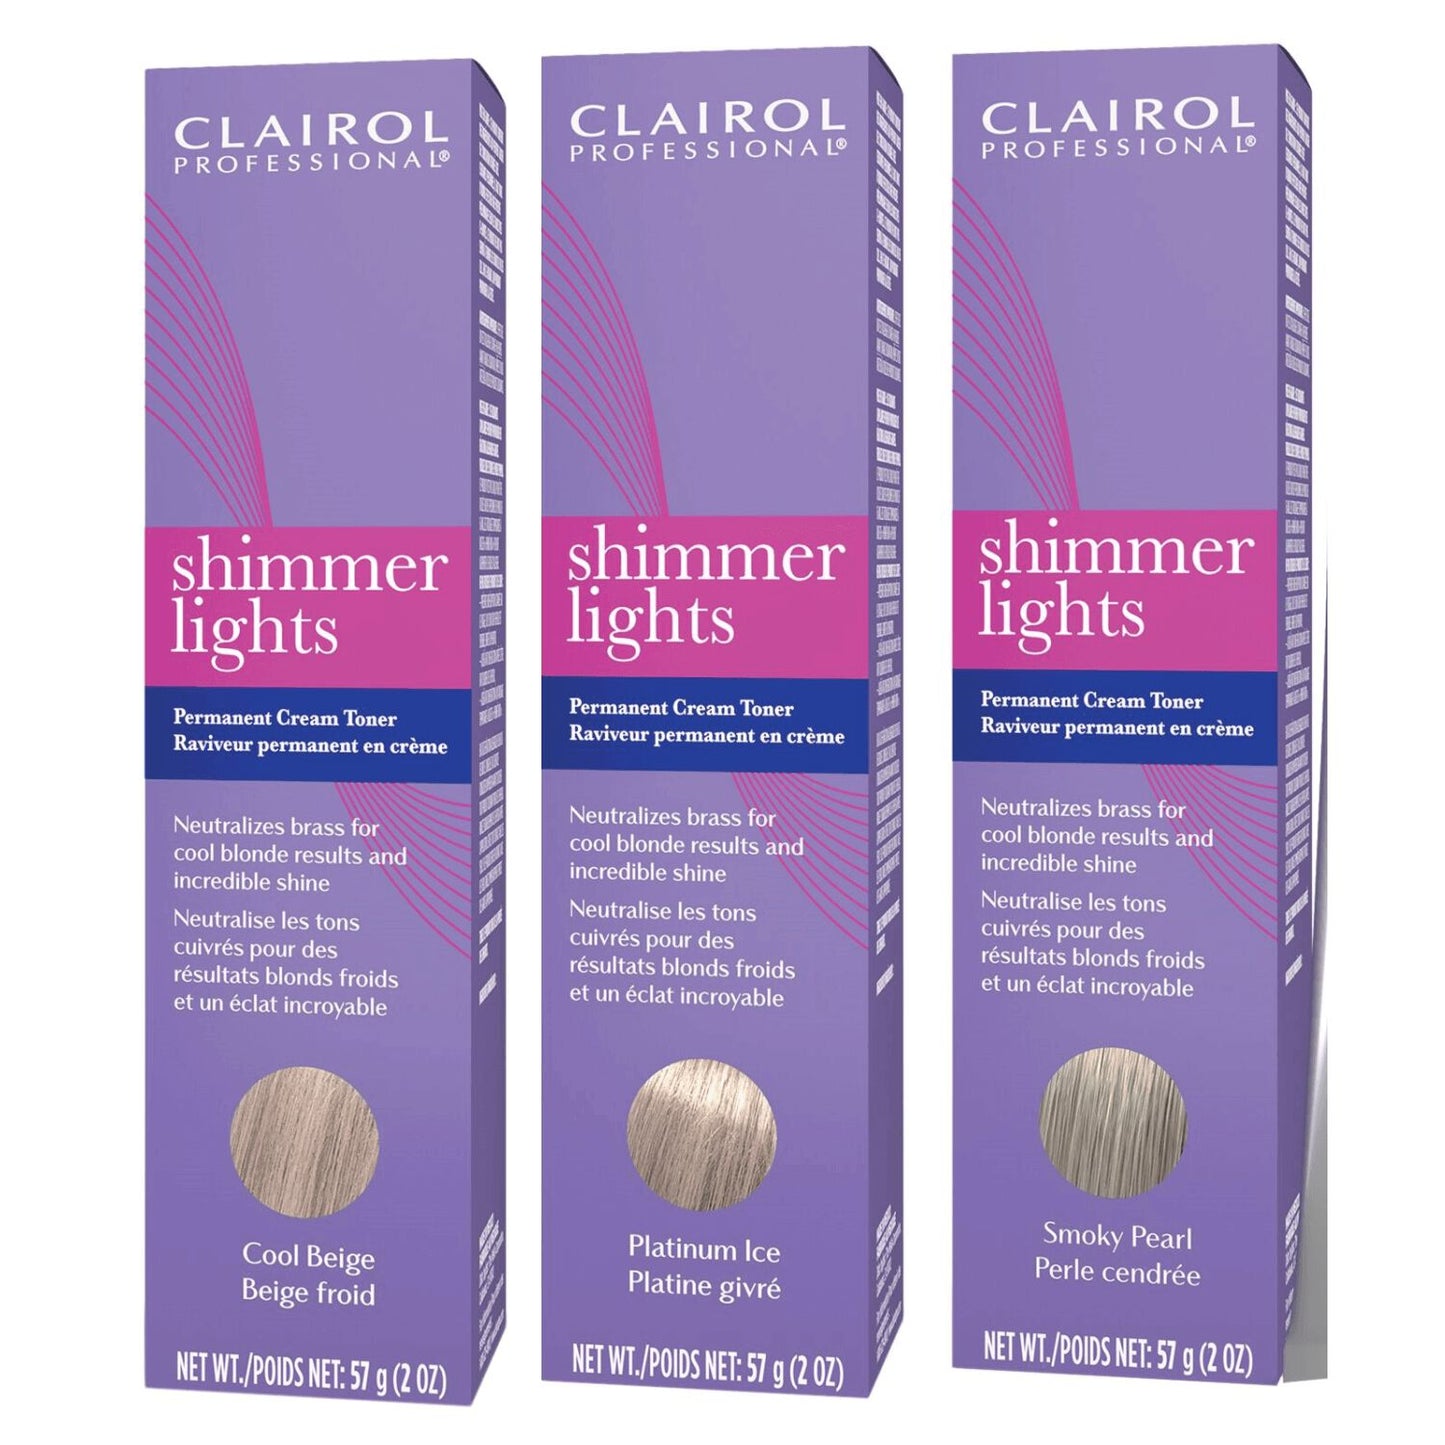 Clairol Professional Permanent Cream Toner